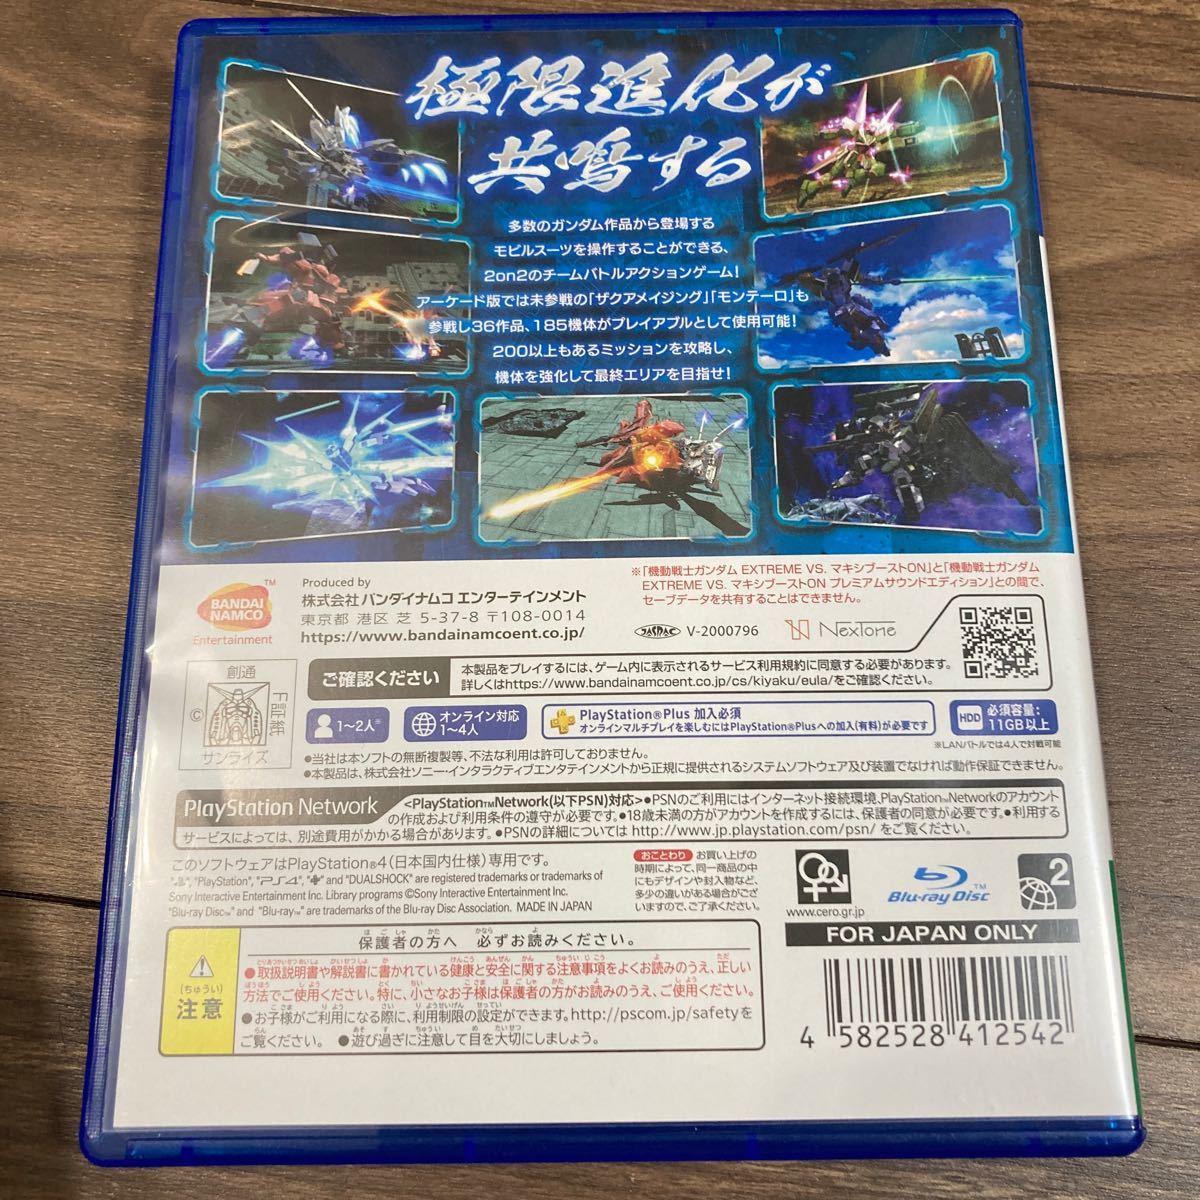 【PS4】 機動戦士ガンダム EXTREME VS. マキシブーストON [通常版]バナパスポートカード未開封